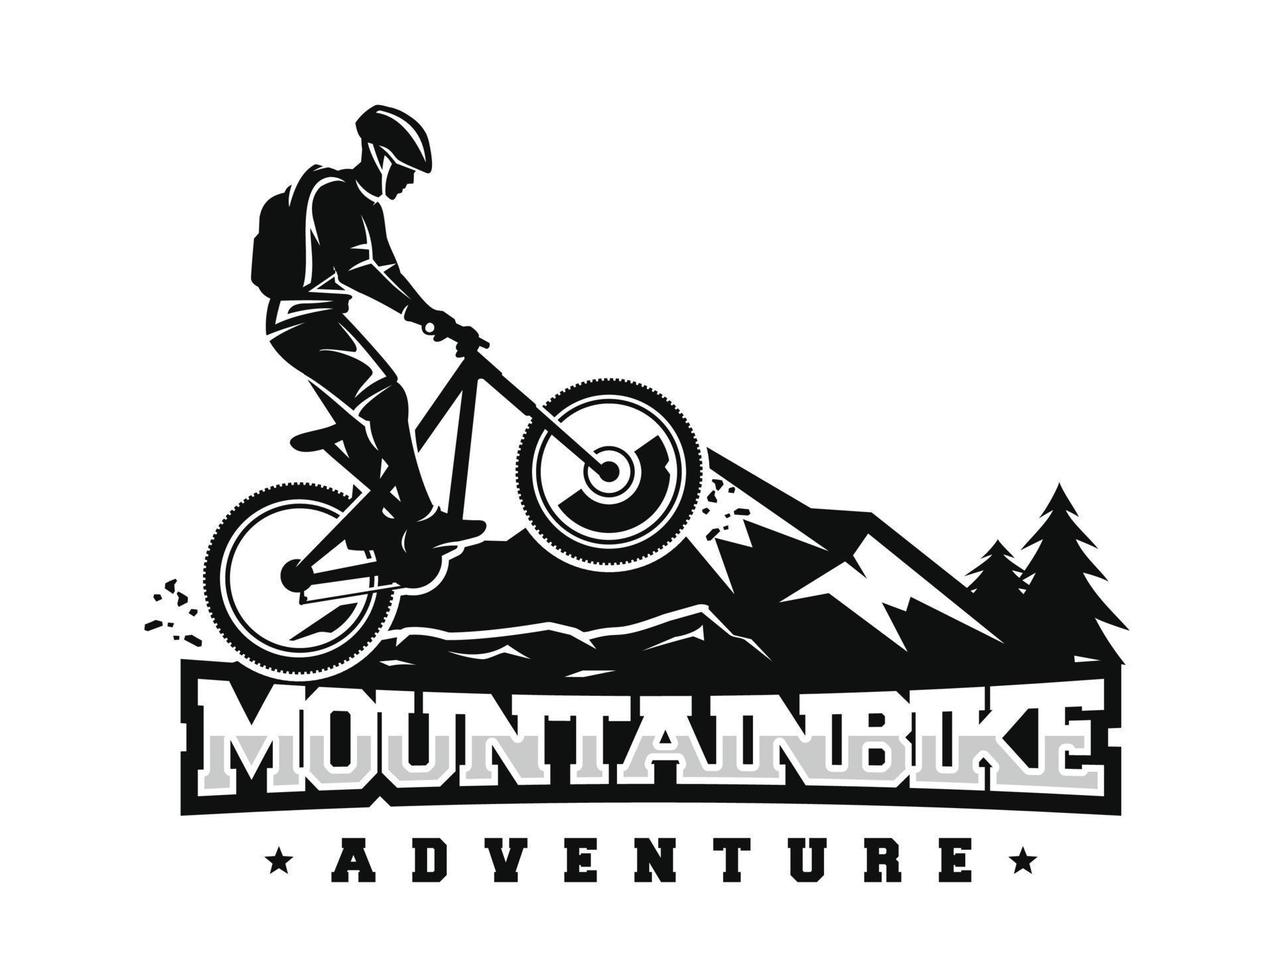 montagna bicicletta logo design vettore